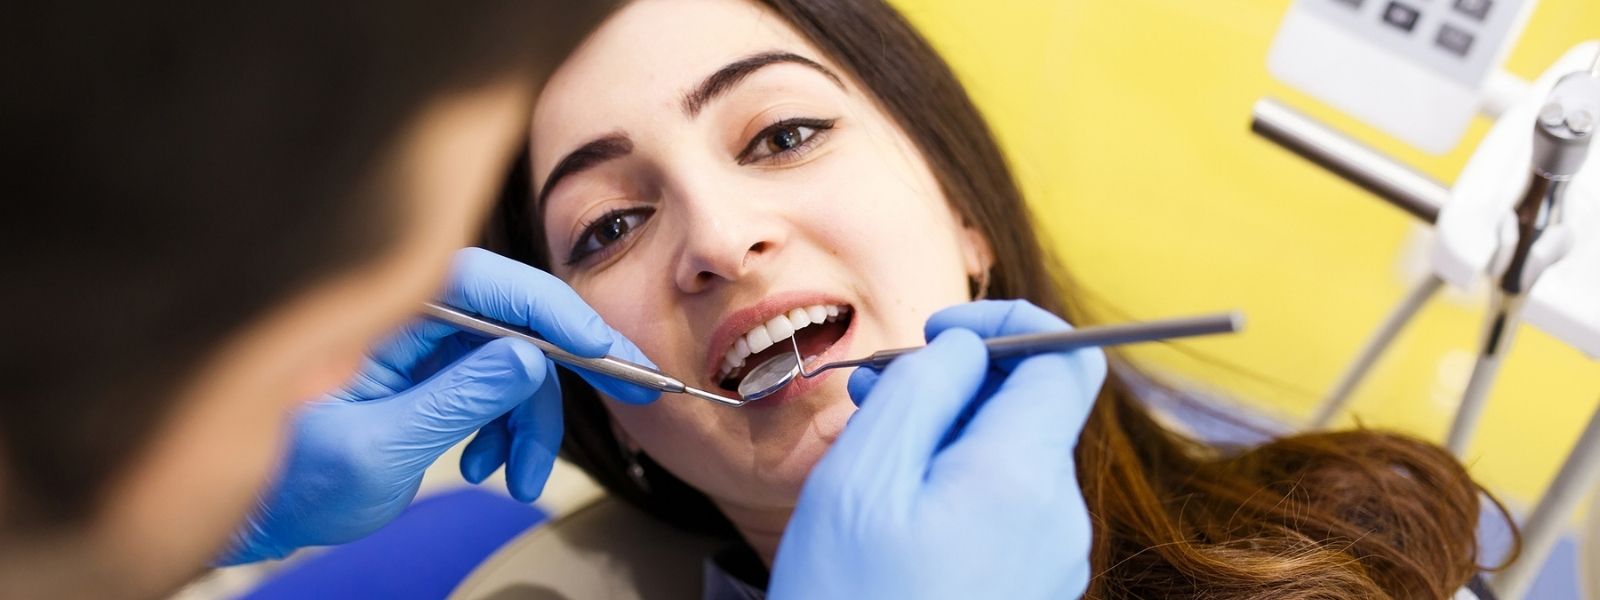 A girl facing a dental extraction.